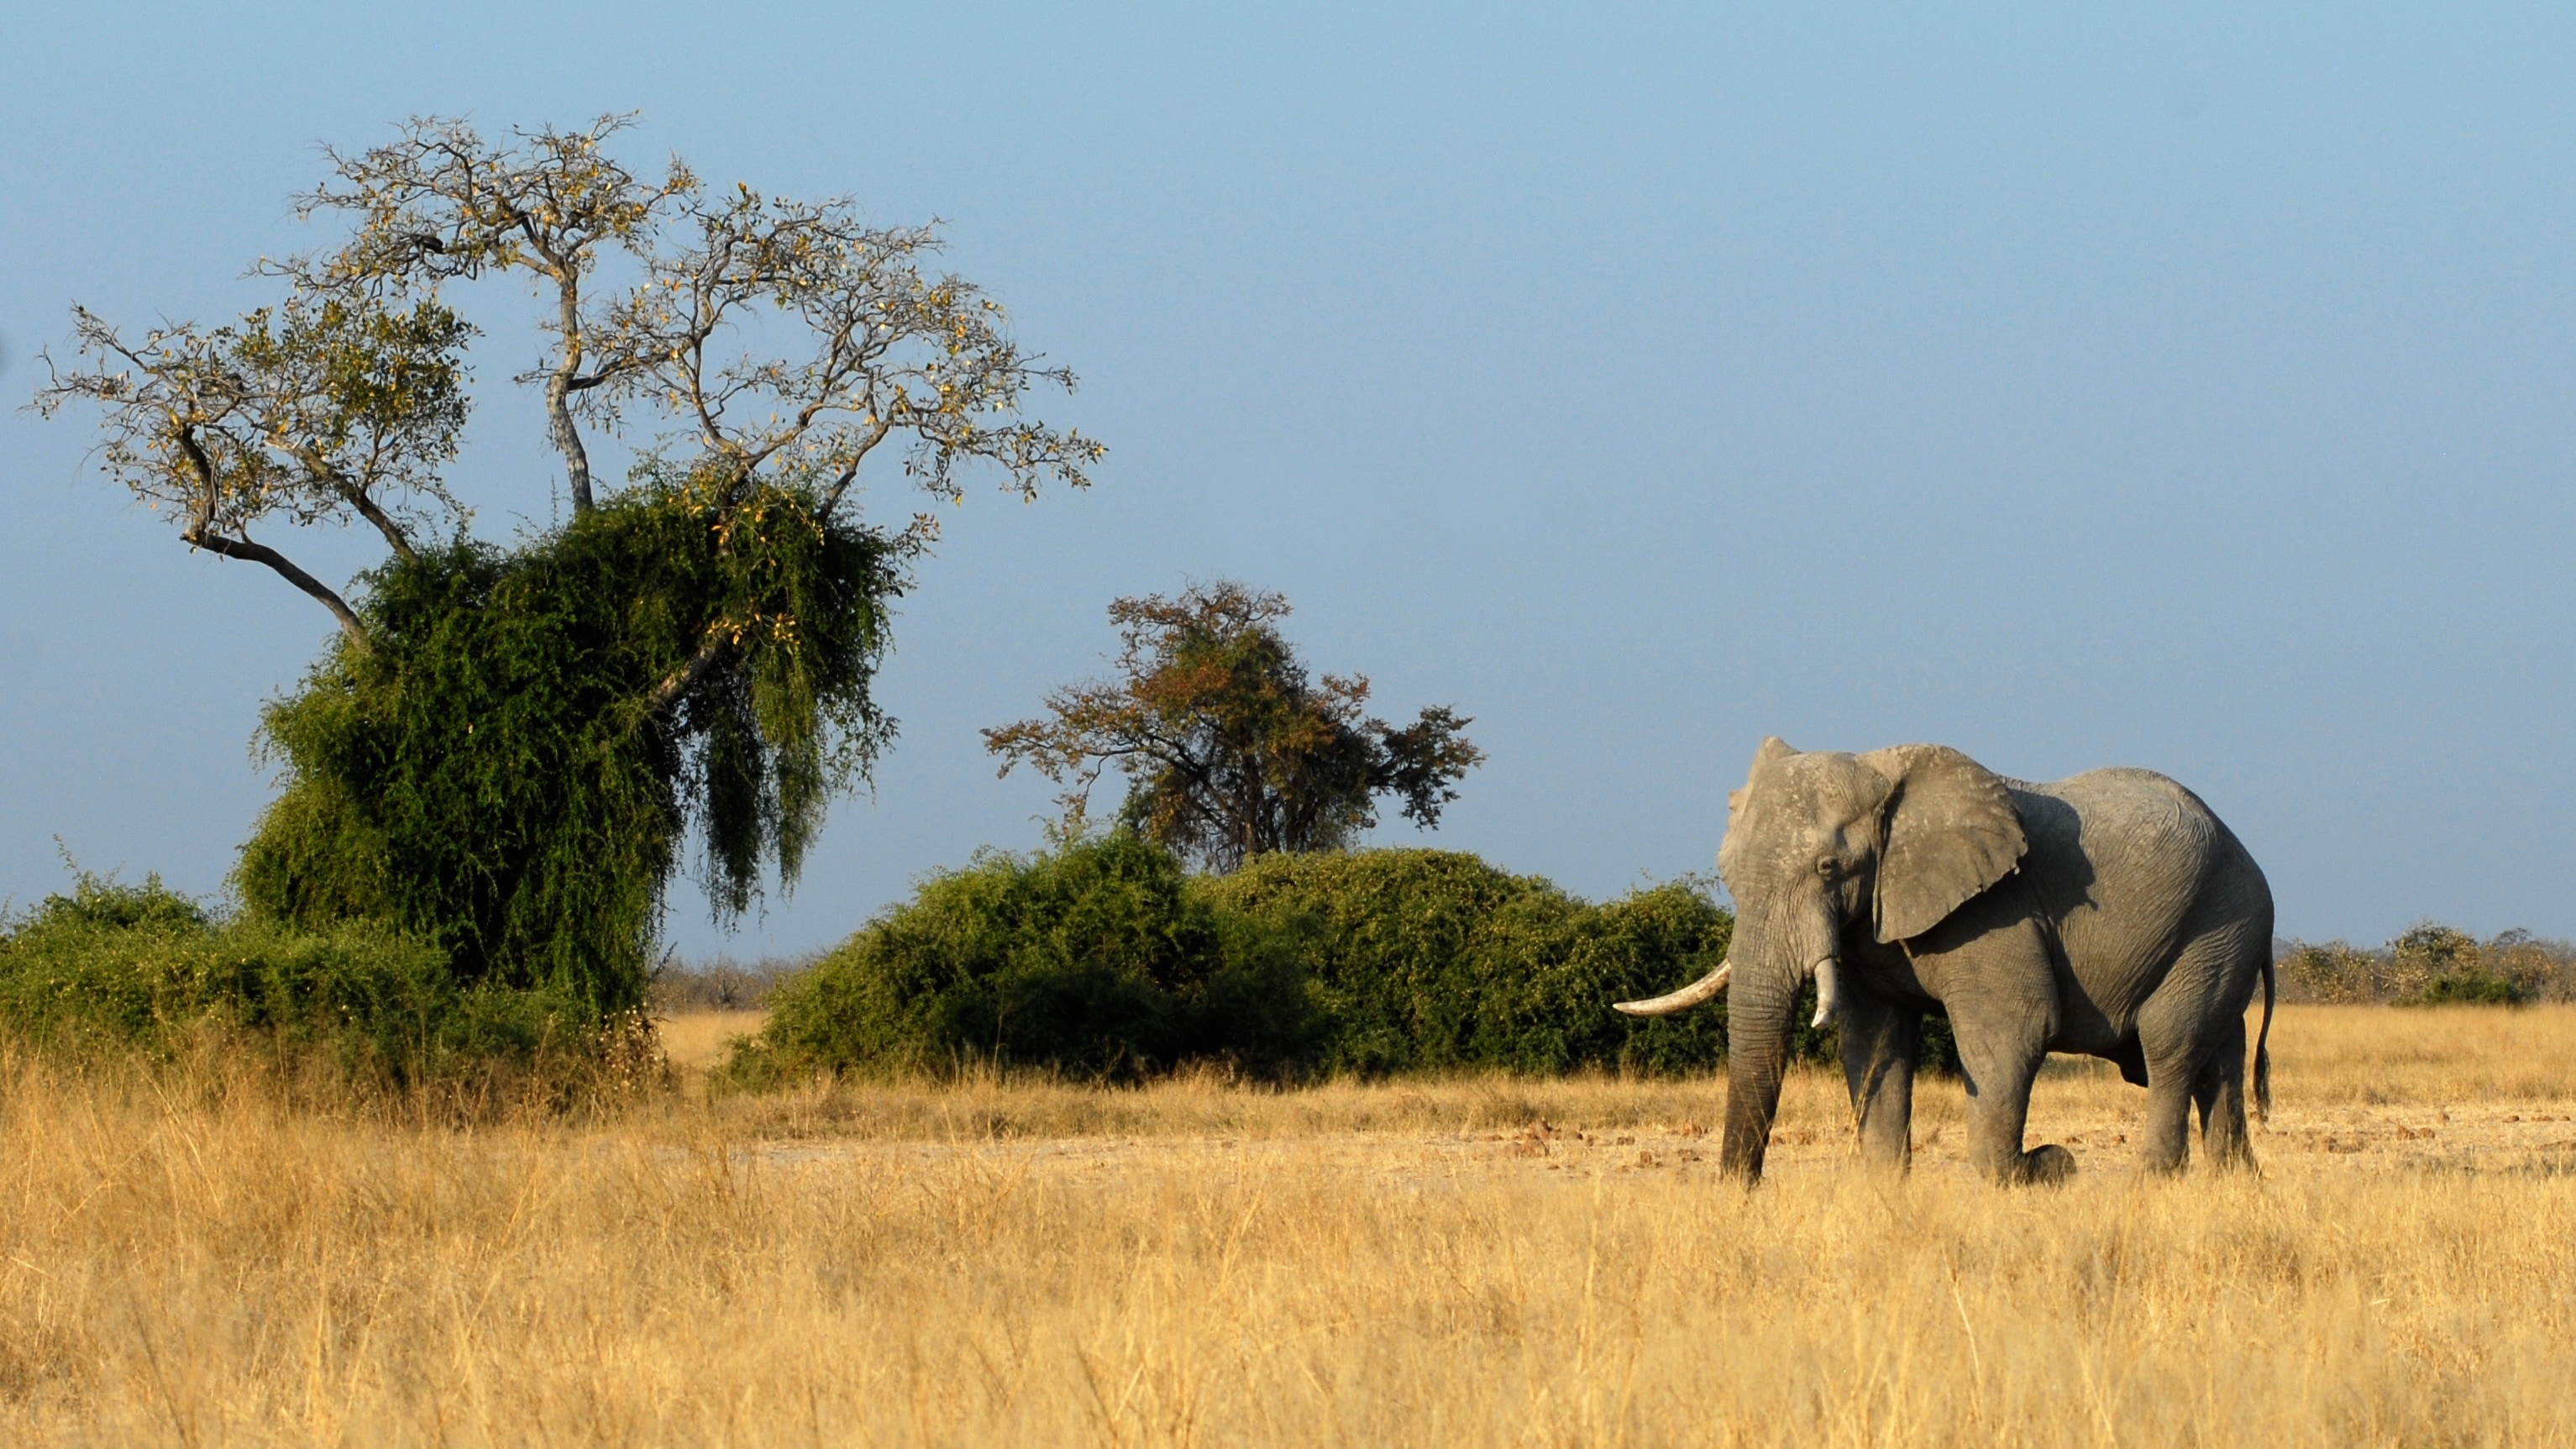 gray elephant walking on brown grass field